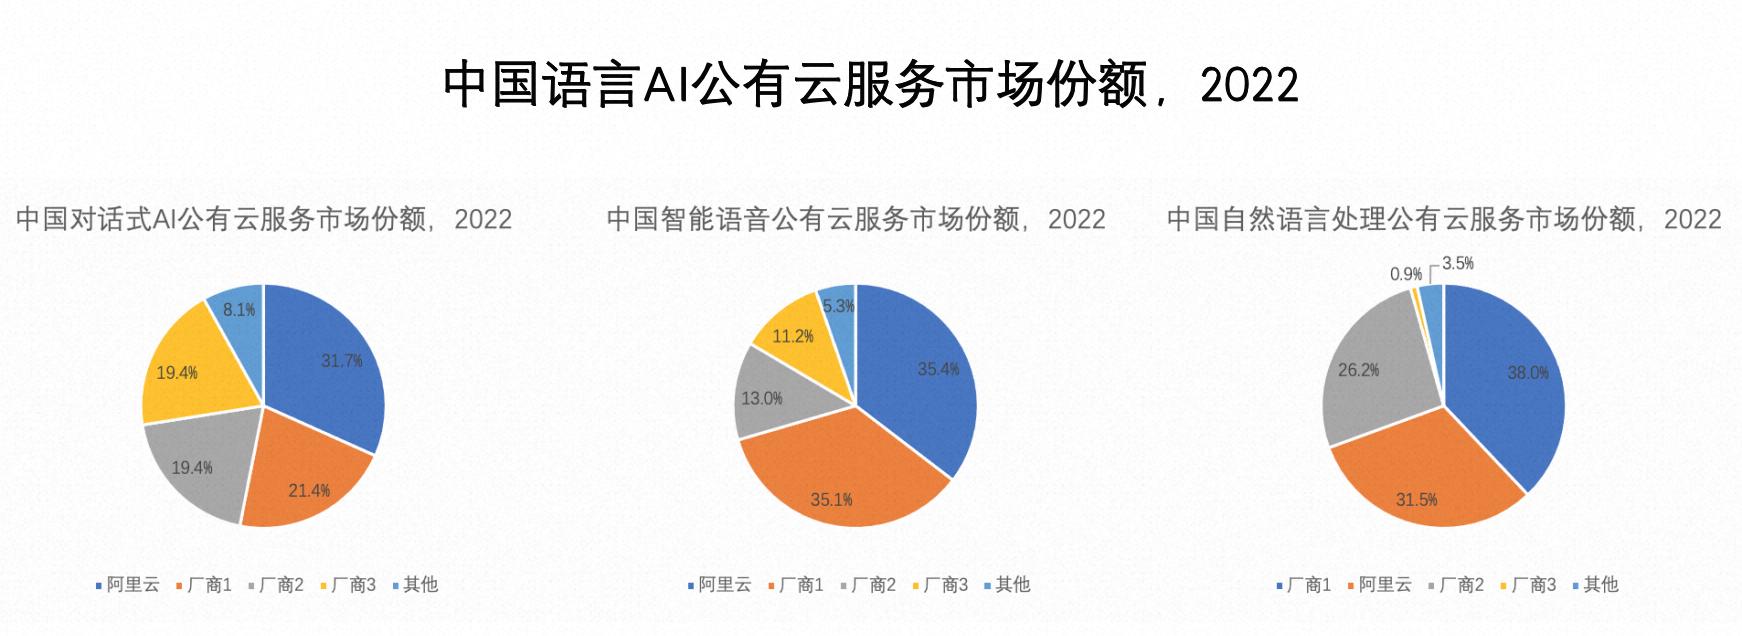 数据来源：IDC《中国人工智能公有云服务市场份额，2022》